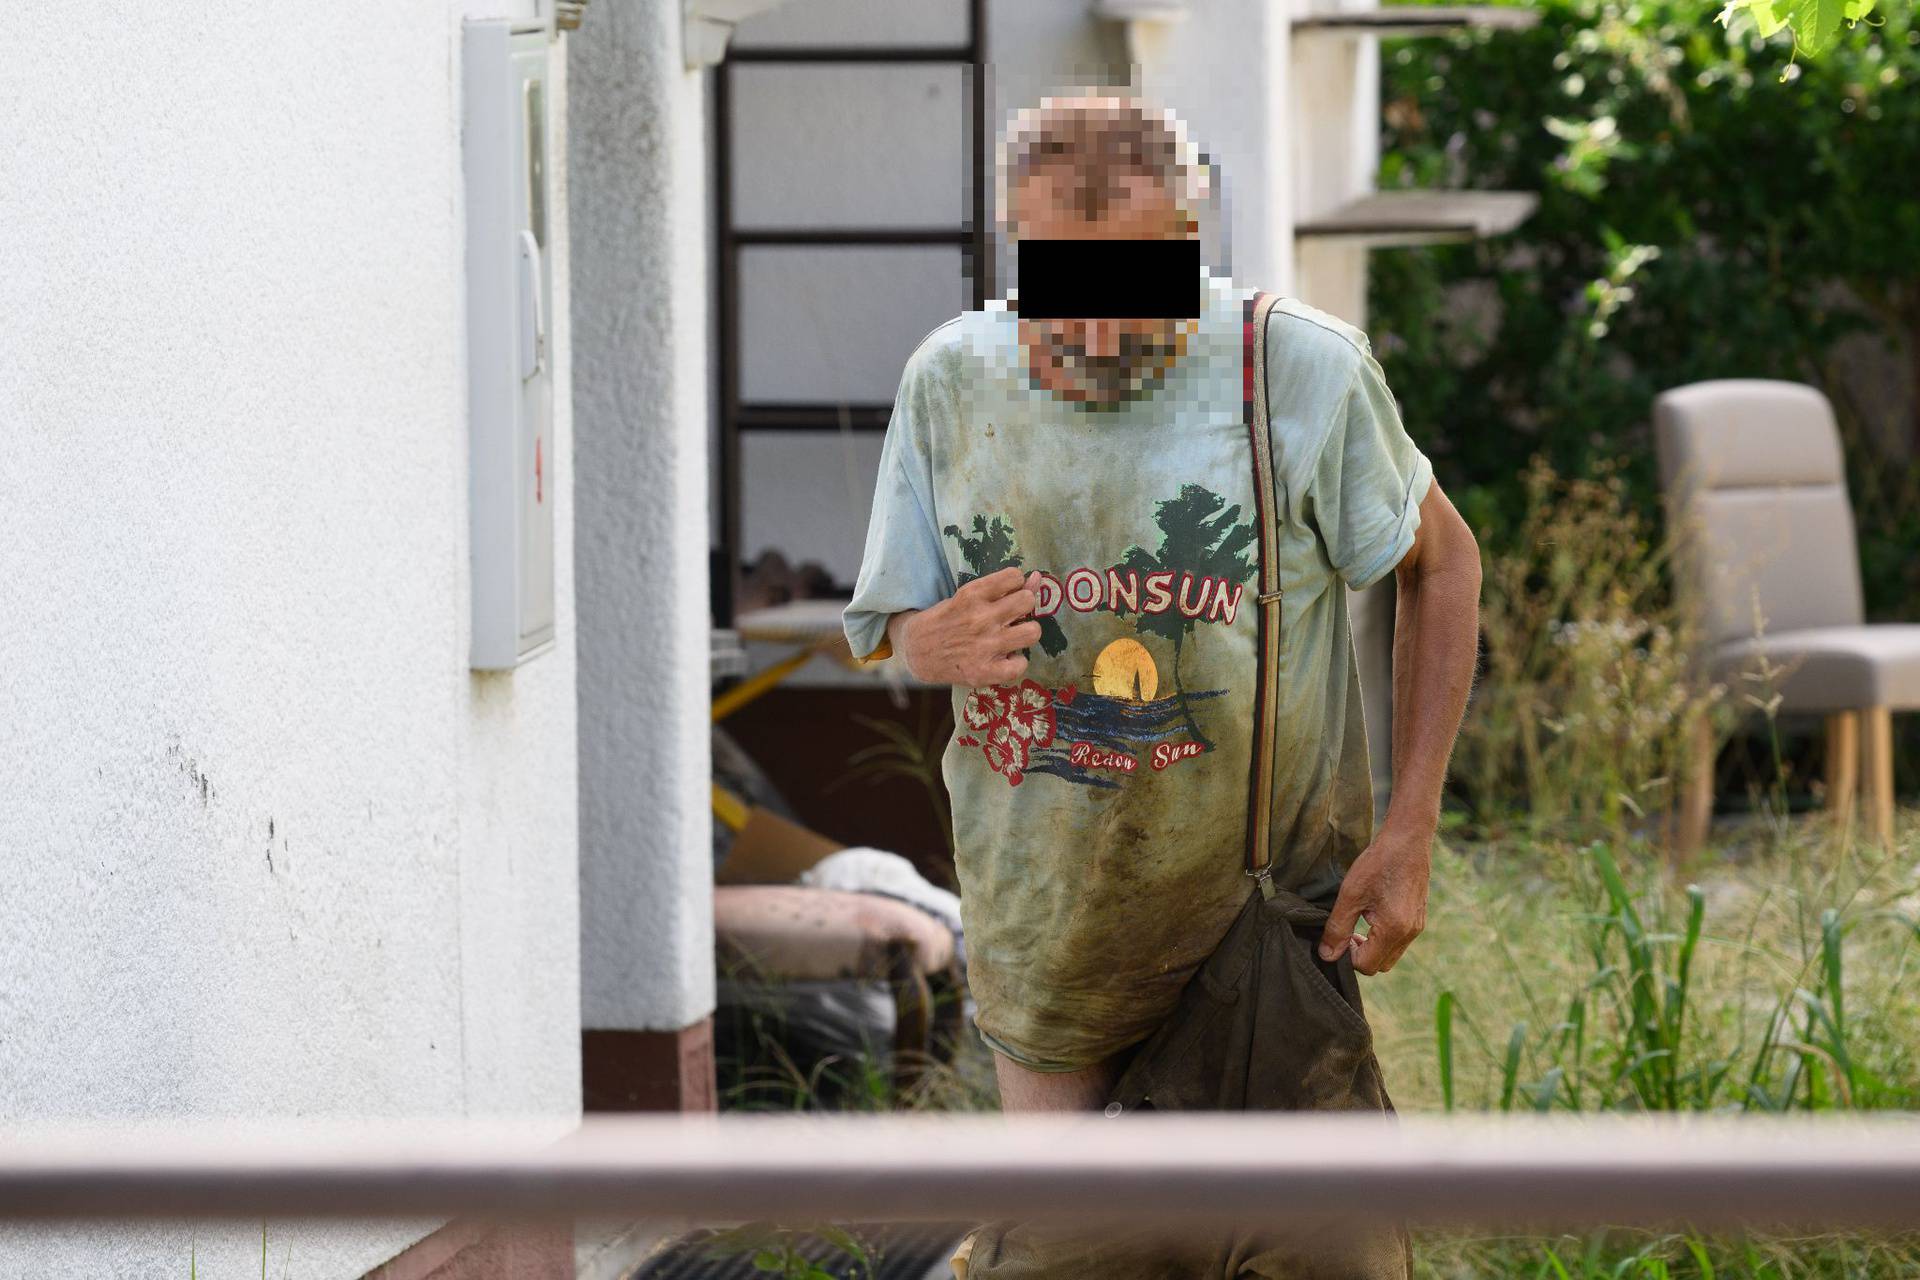 Uznemirujuće: Čovjek s invaliditetom prljav sjedi ispred kuće, susjedi mu donose hranu